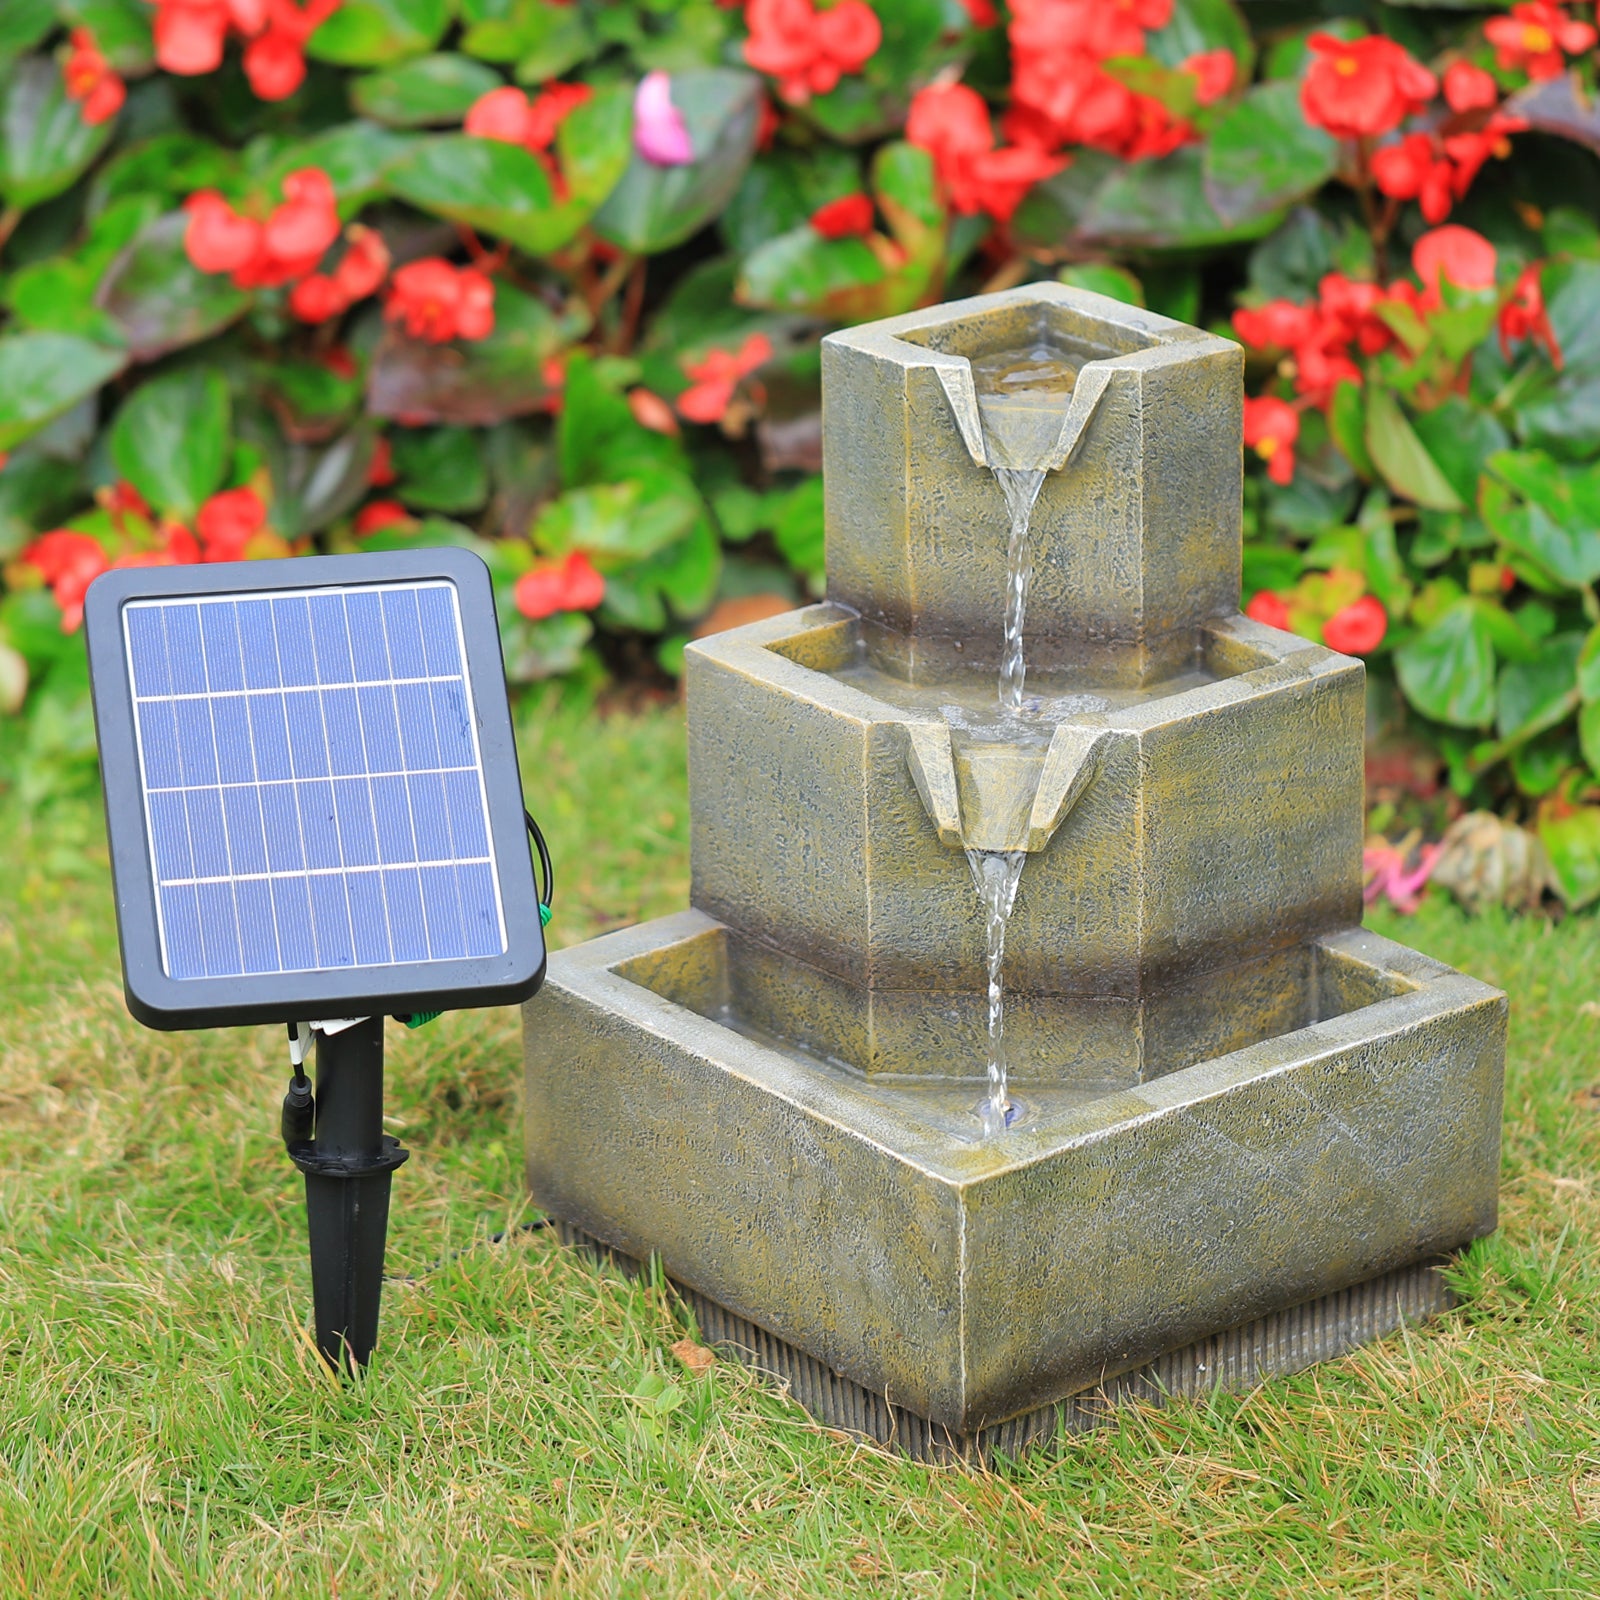 3-Tierd Solar Powered Garden Cascading Fountain with LED Lights